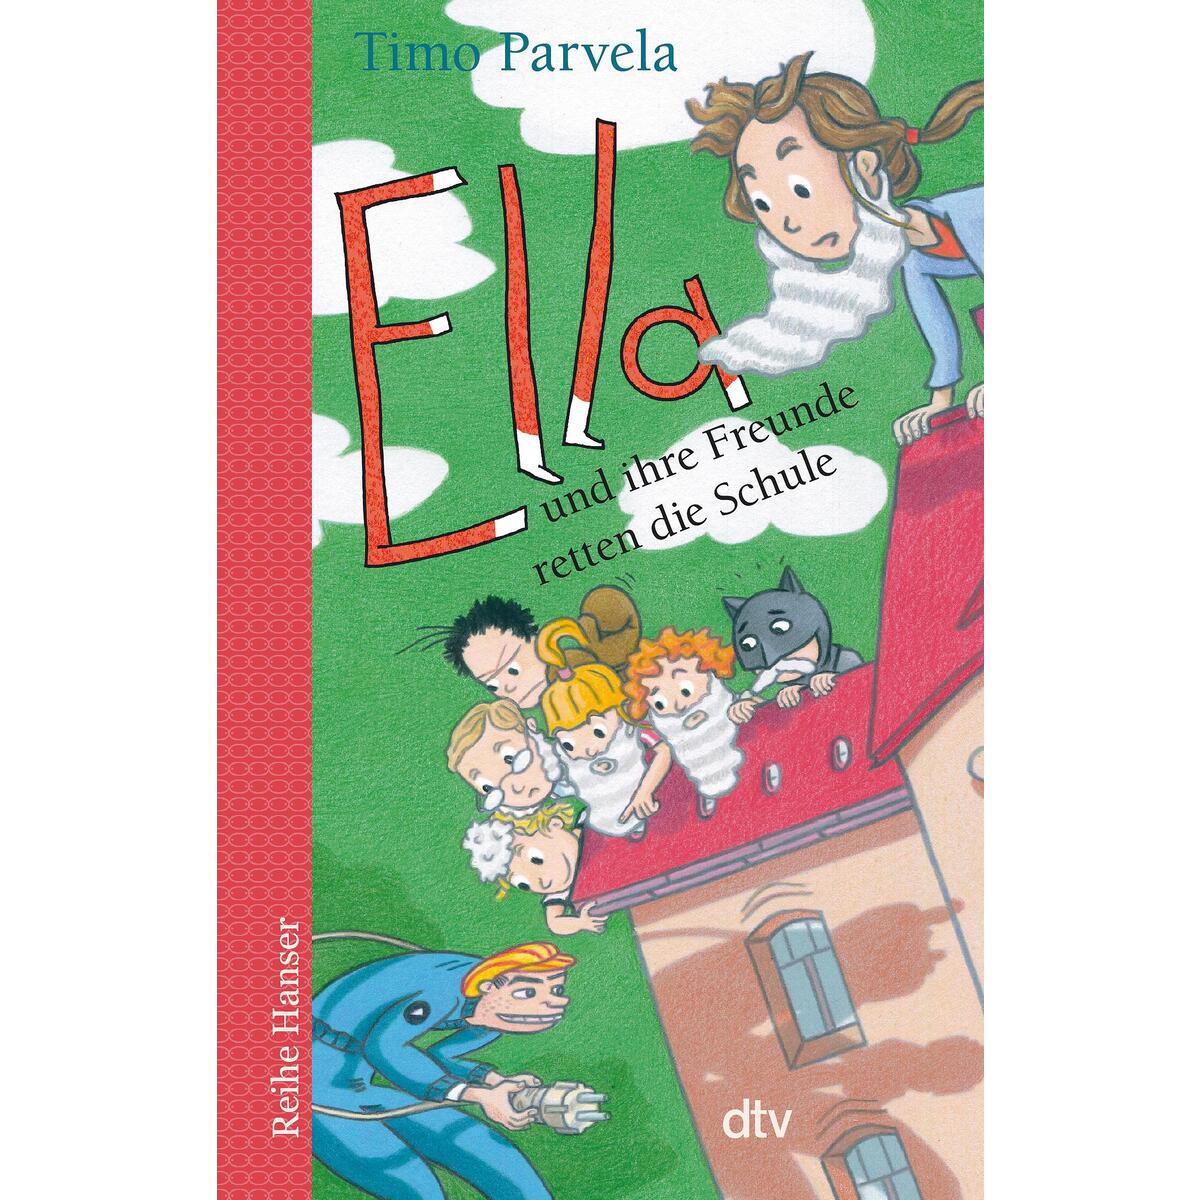 Ella und ihre Freunde retten die Schule von dtv Verlagsgesellschaft